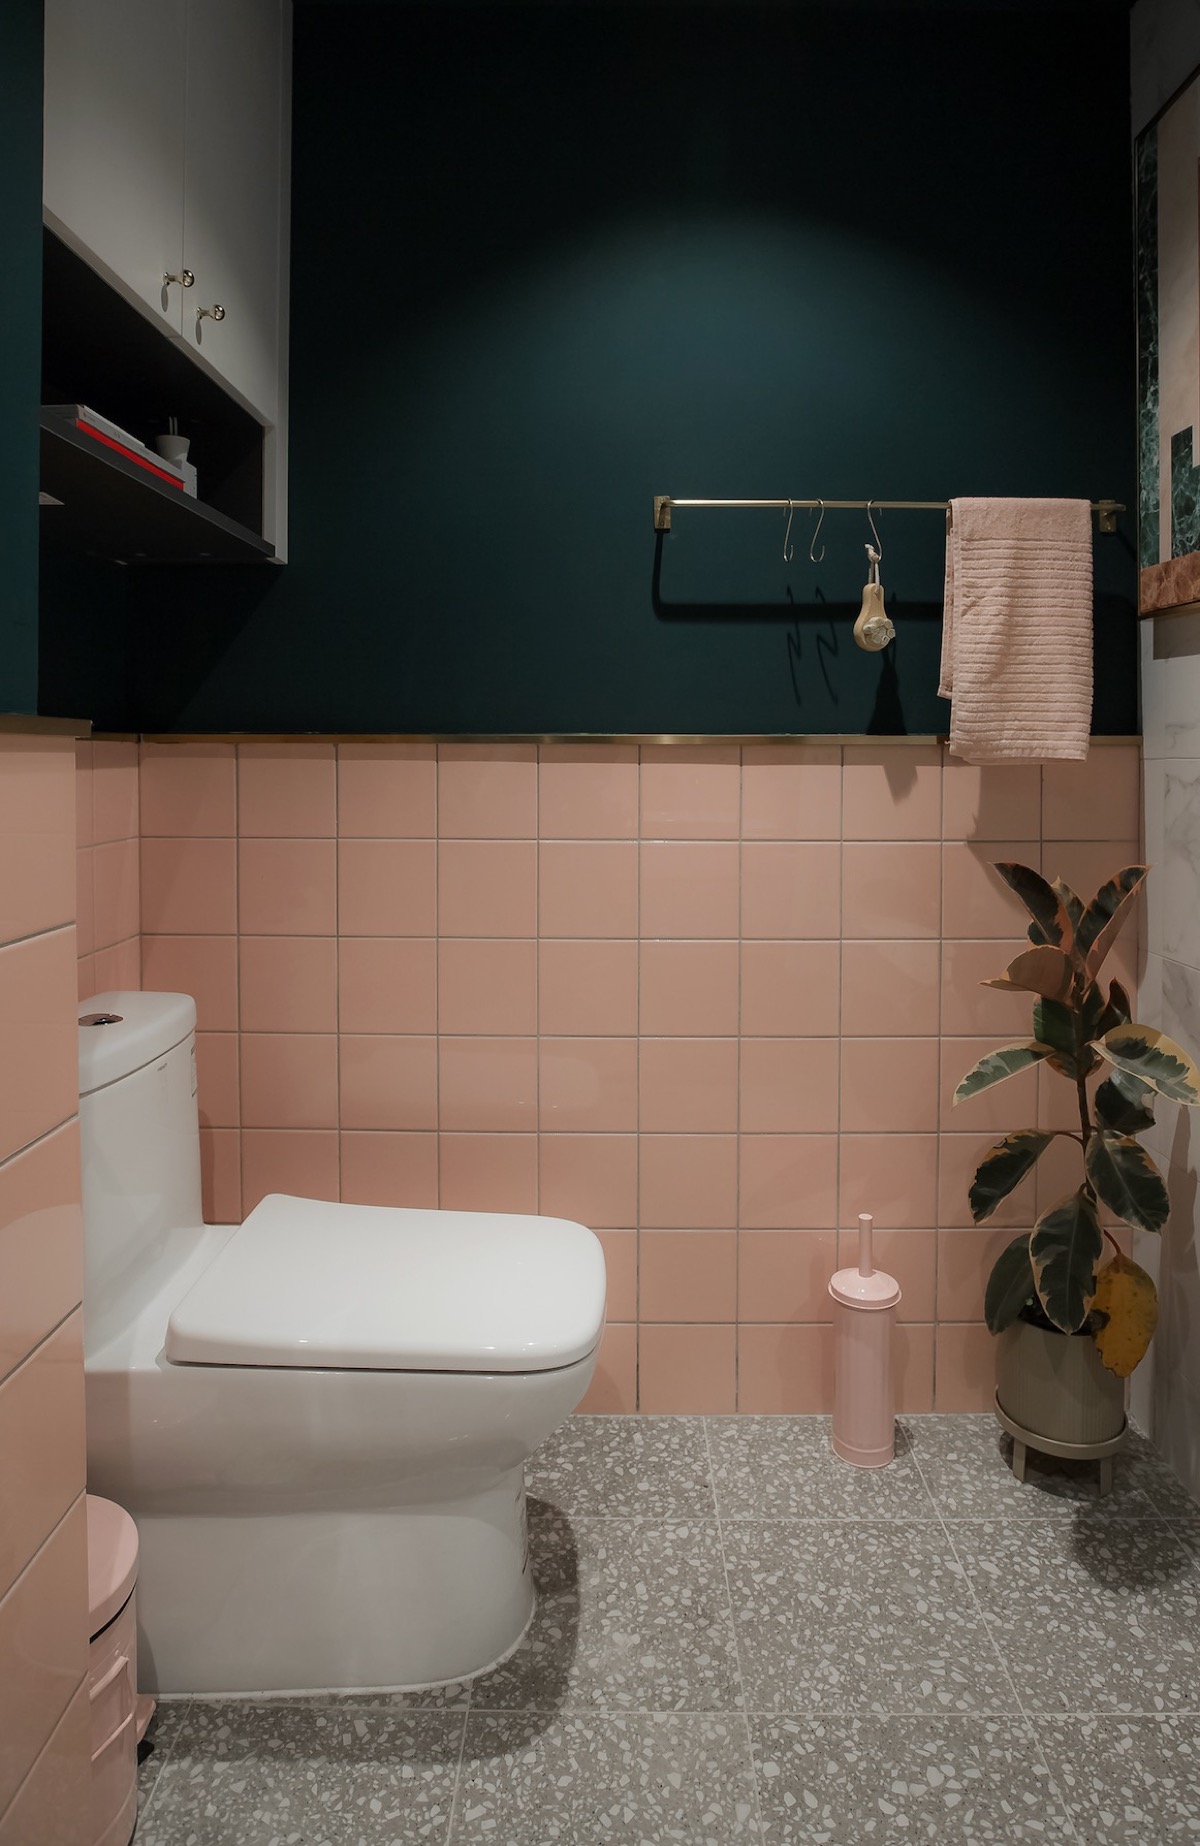 Phòng tắm lựa chọn nội thất và thiết kế cực kỳ đơn giản, đáp ứng những nhu cầu cơ bản nhưng vẫn hút mắt bởi sự thông minh khi chọn lựa sắc màu tương phản. Sơn tường màu xanh lá đậm kết hợp gạch ốp màu hồng tươi sáng thích hợp cho không gian nhỏ như thế này.